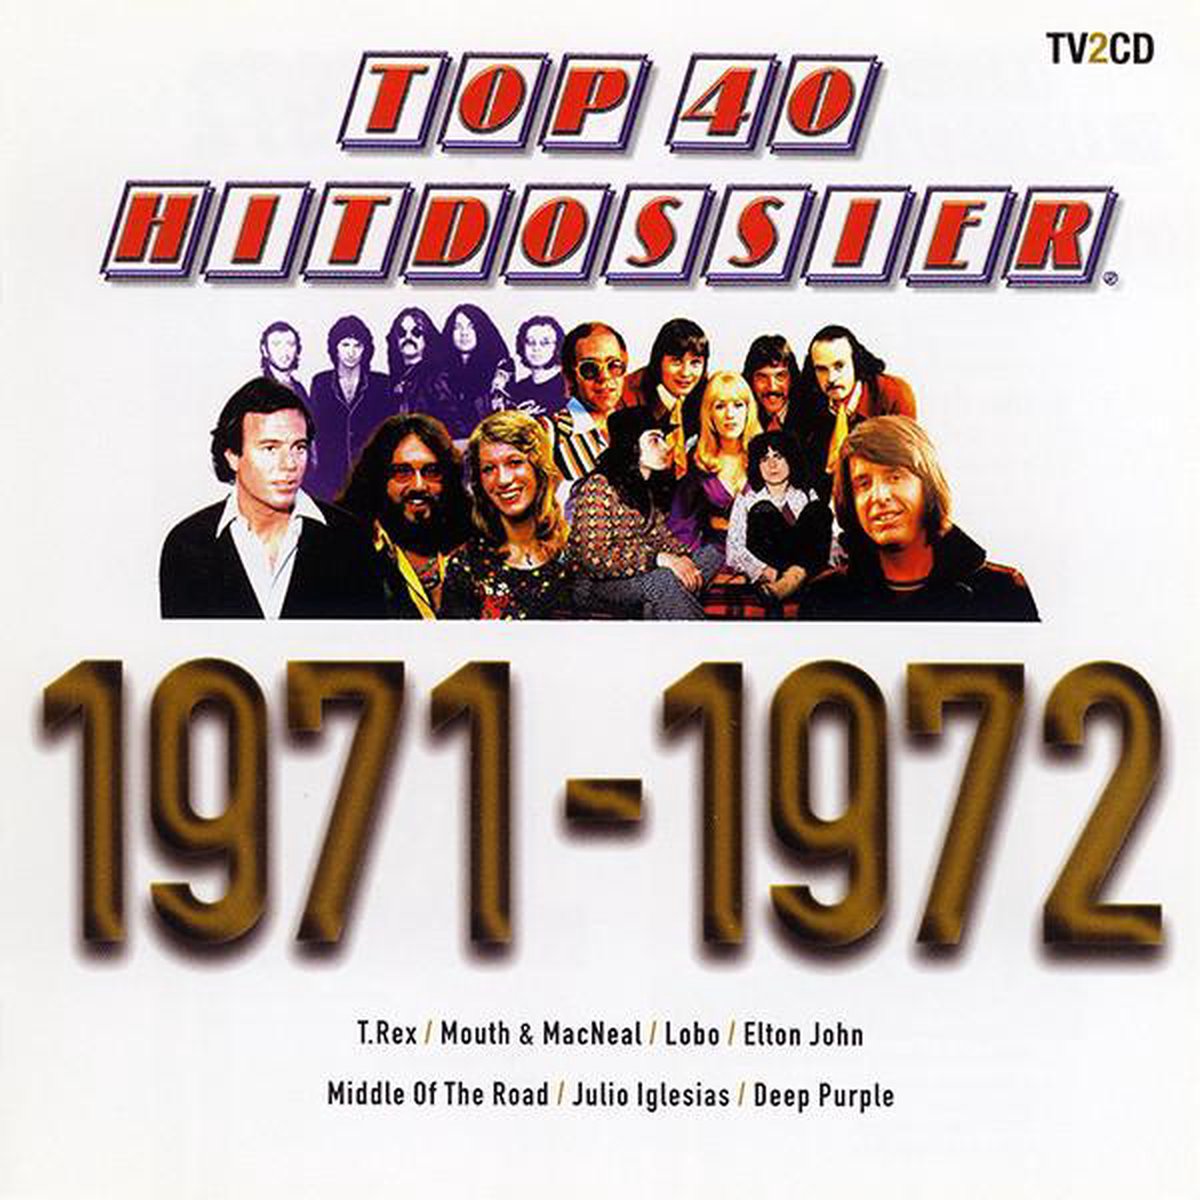 Top 40 Hitdossier 71-72 - Top 40